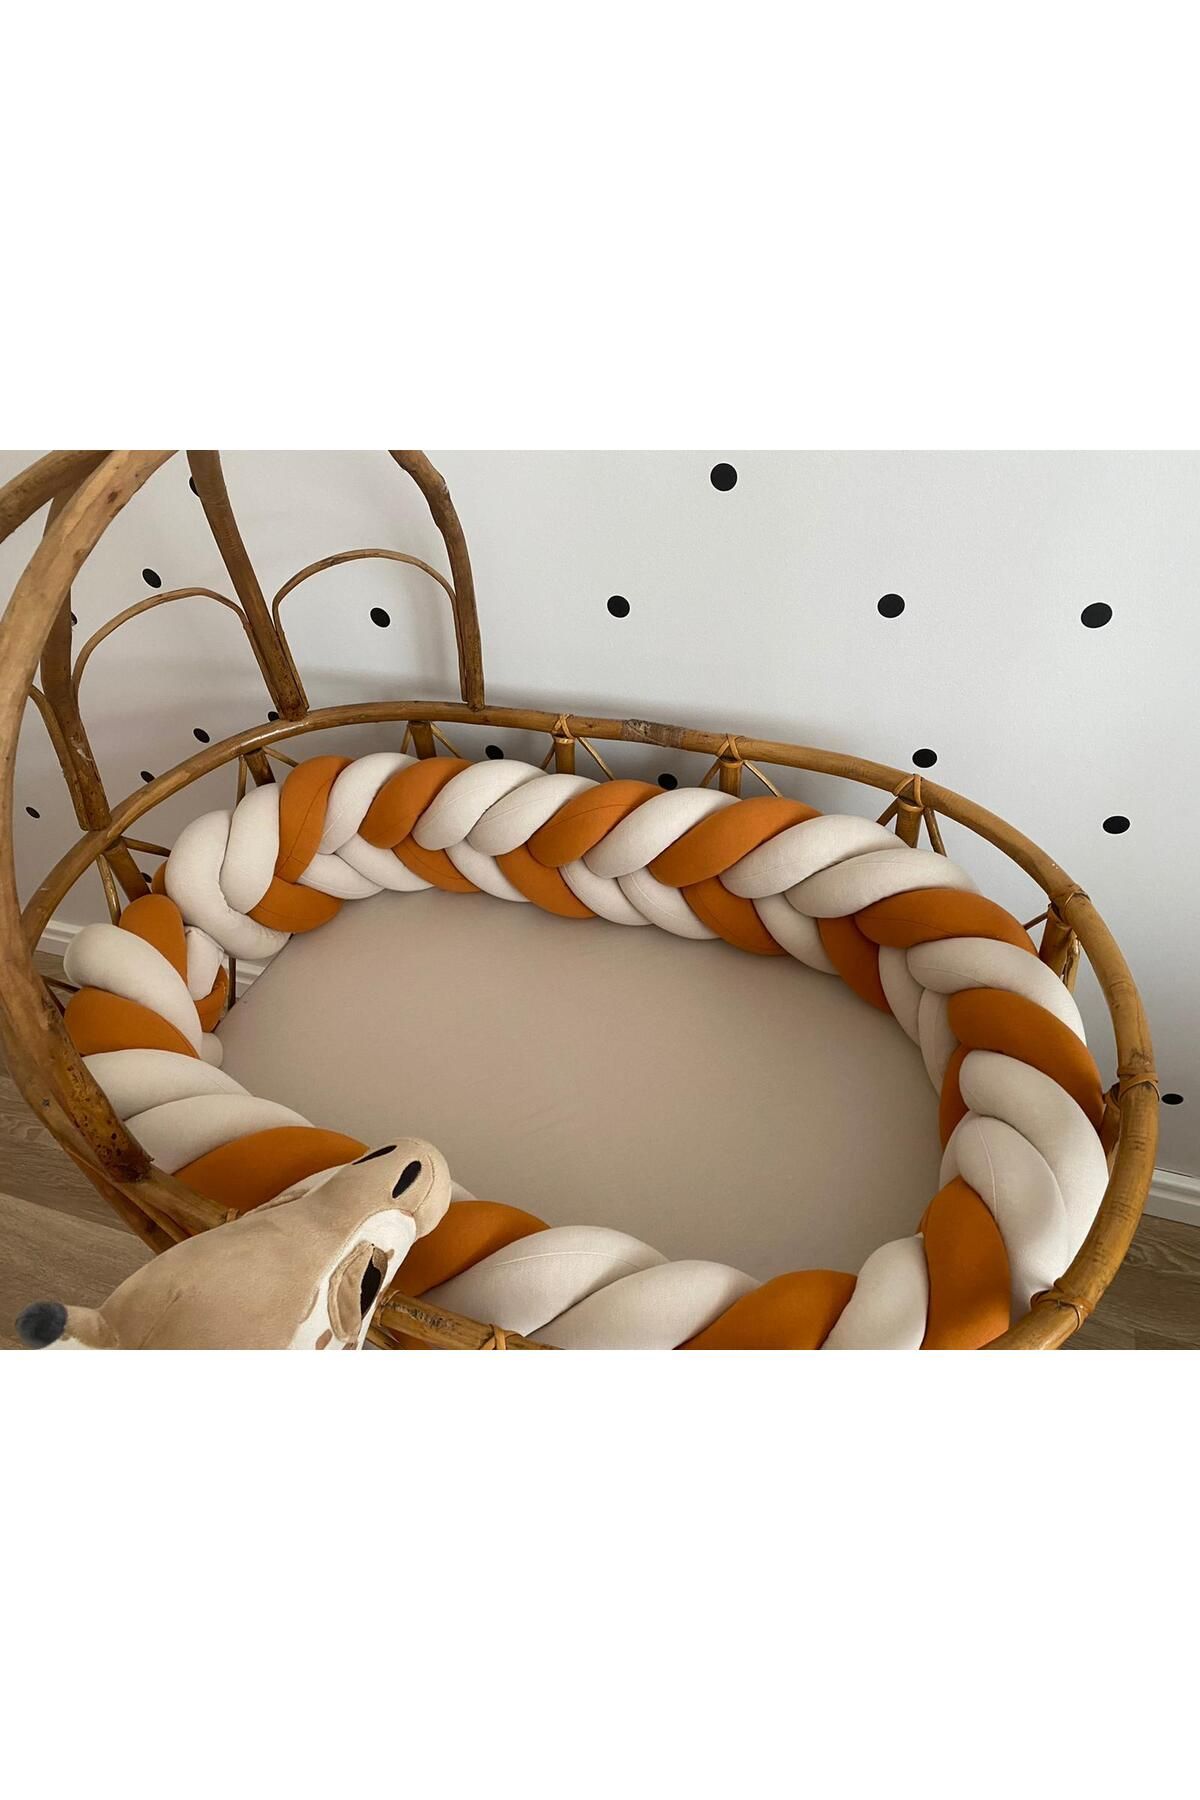 düğüm yastık 420 cm Balık Sırtı model - Tarçın&Bej